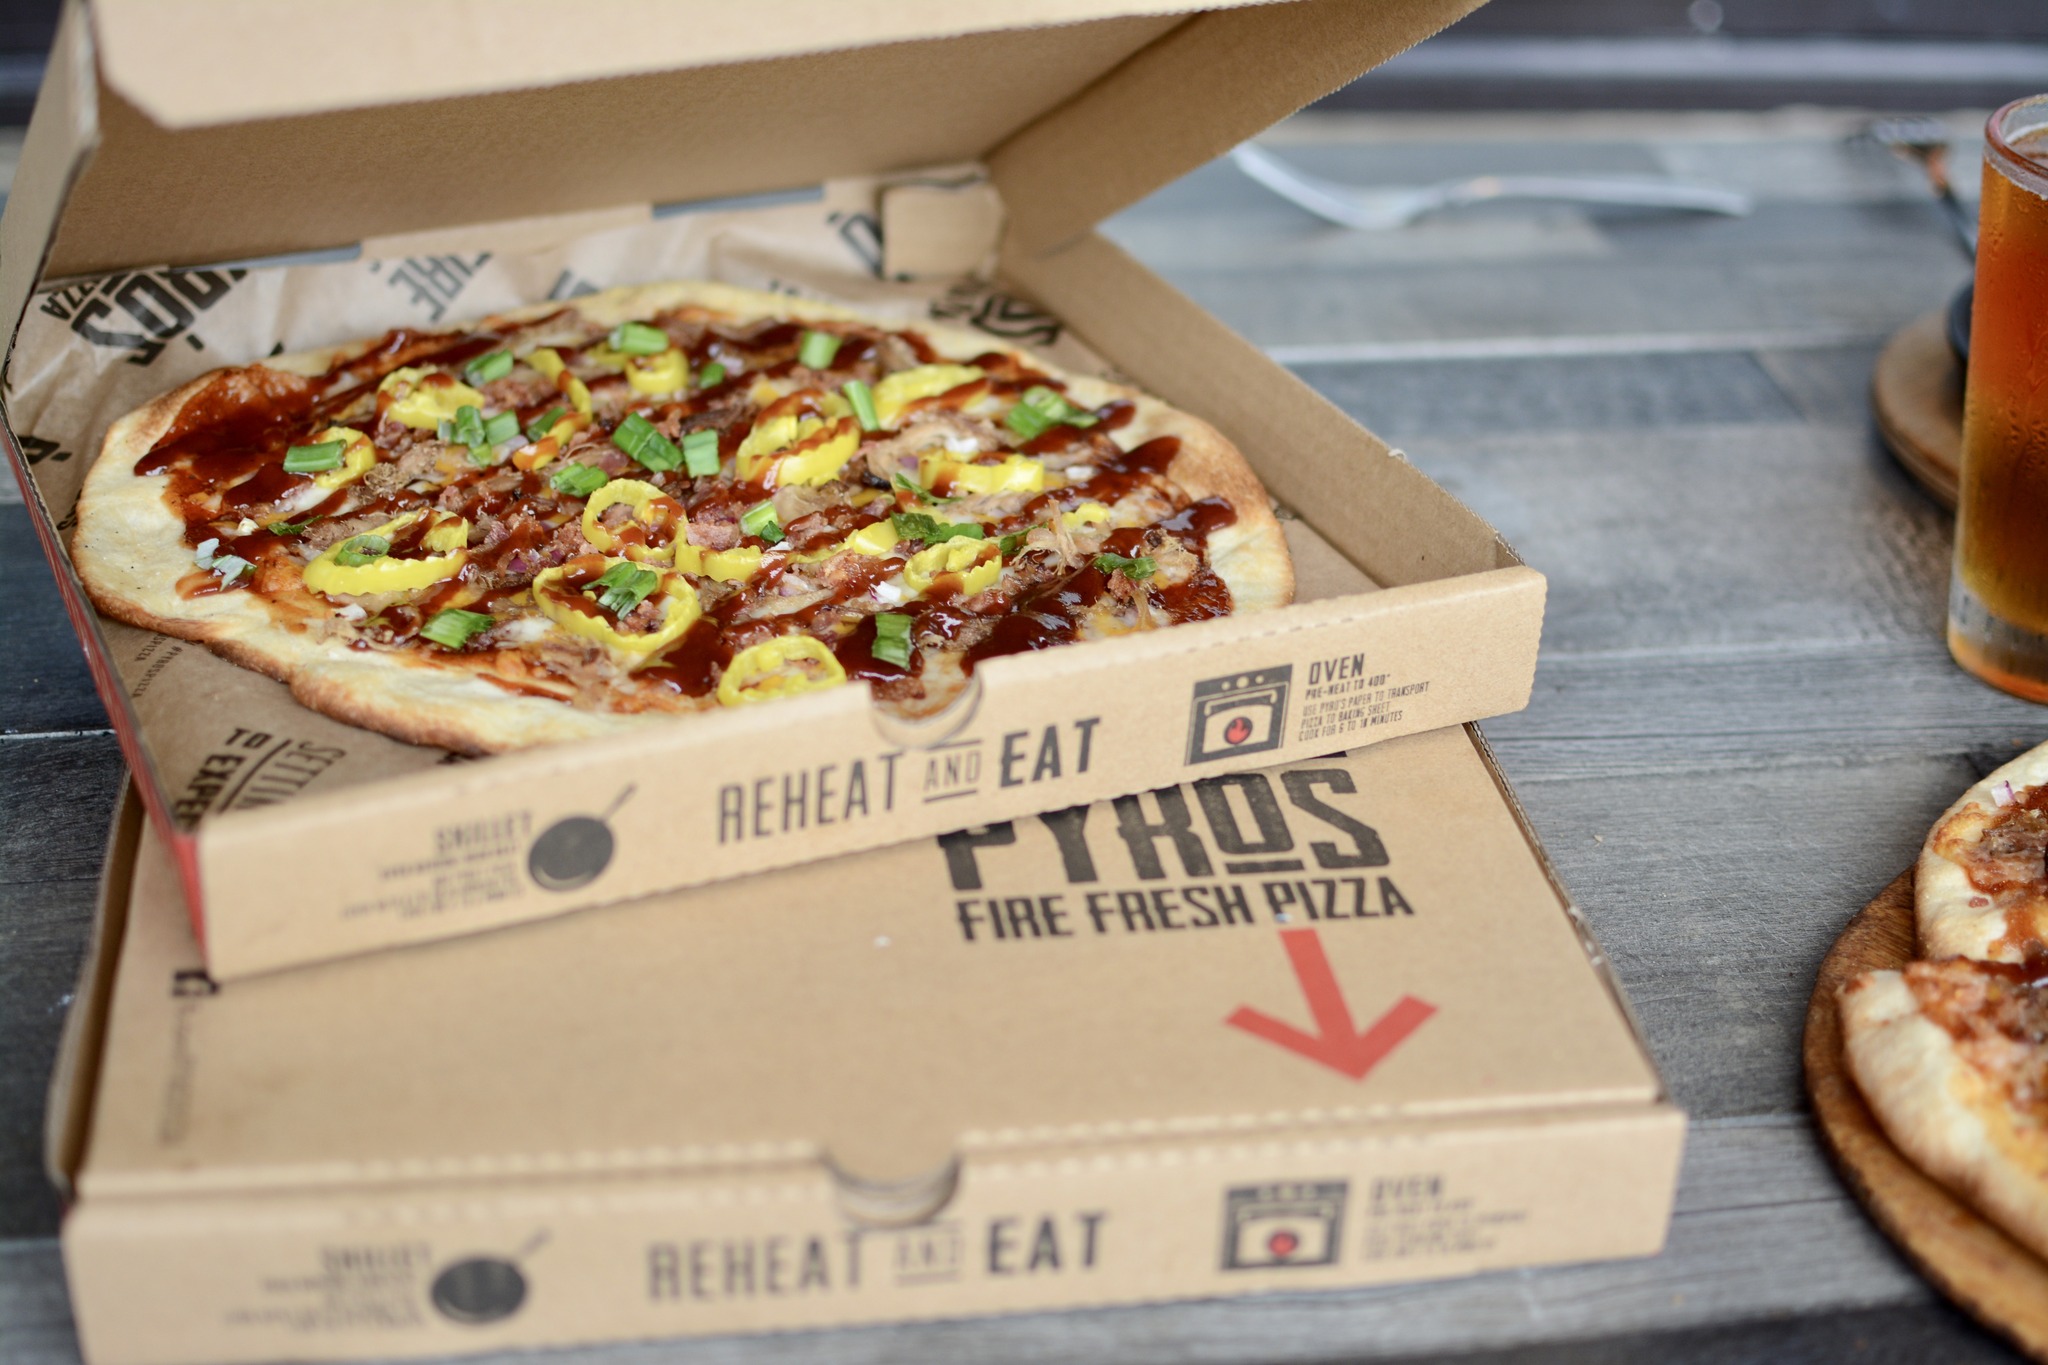 Menikmati Tradisi: Cita Rasa Klasik yang Mendefinisikan Merek Pizza Segar Api Pyro - GroupRaise